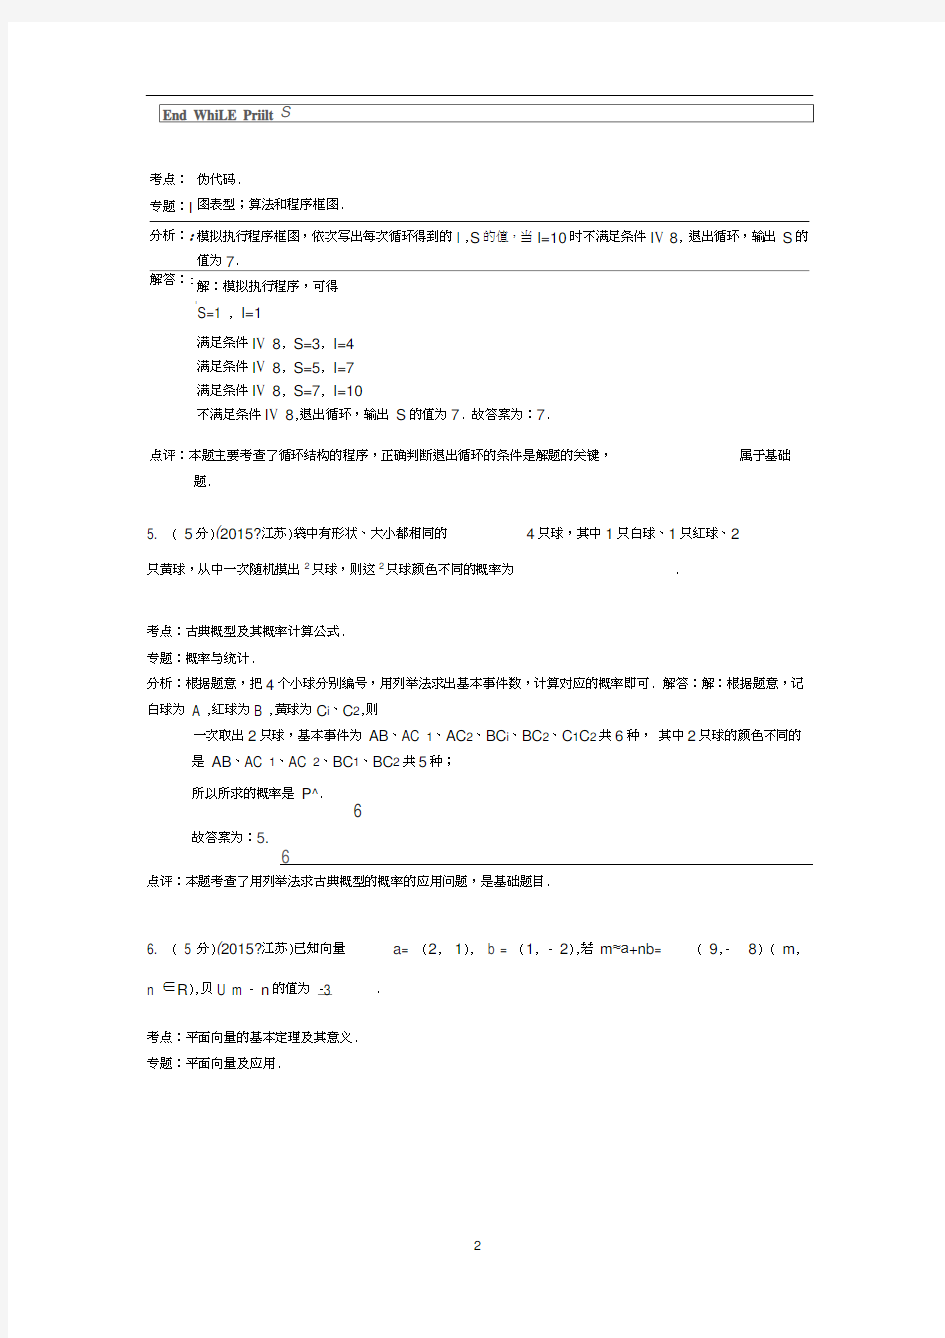 2015年江苏省高考数学试卷答案与解析